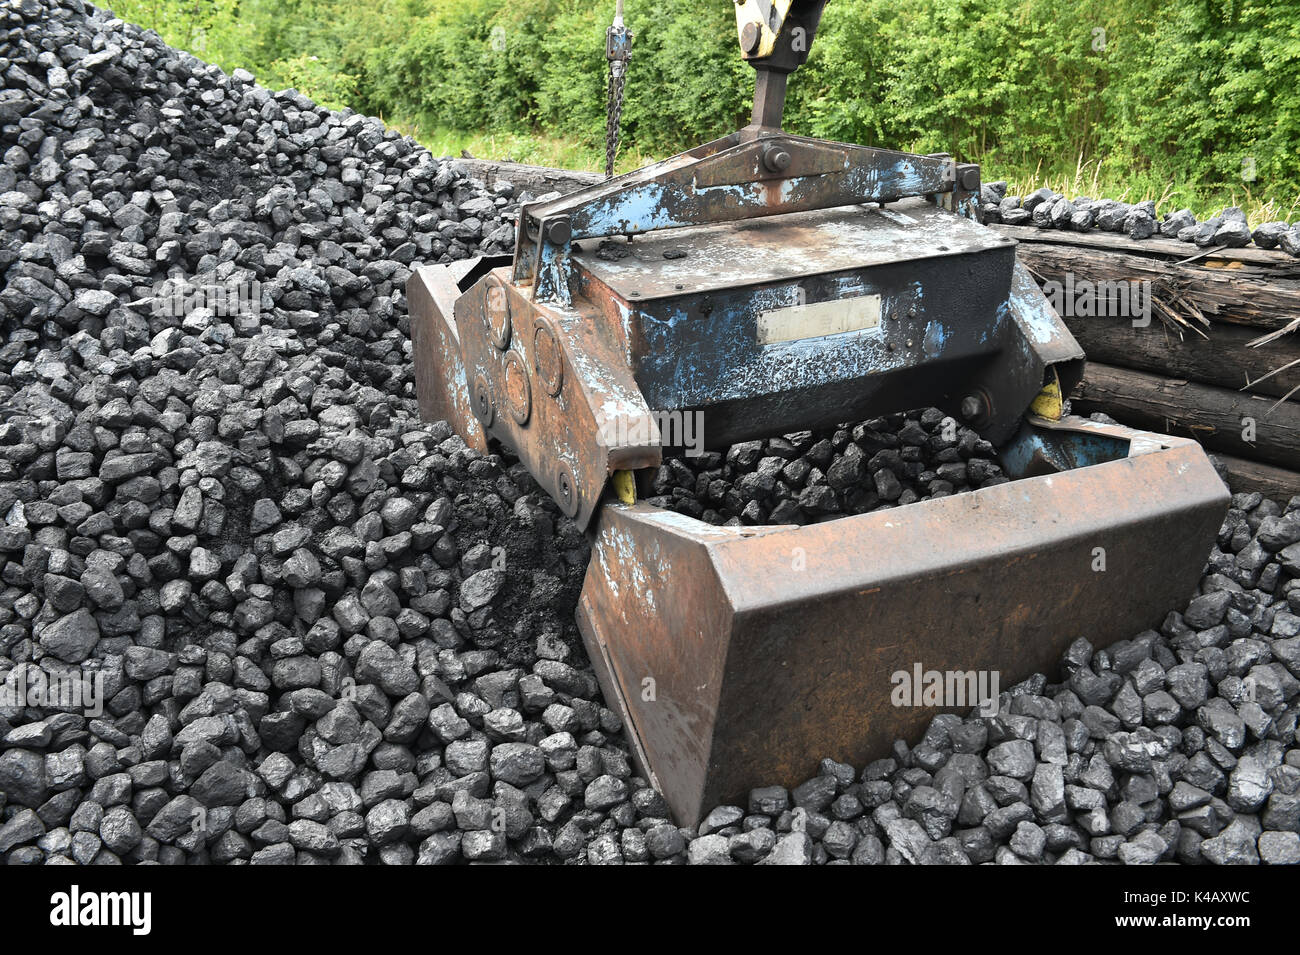 Coal Excavator Stock Photo